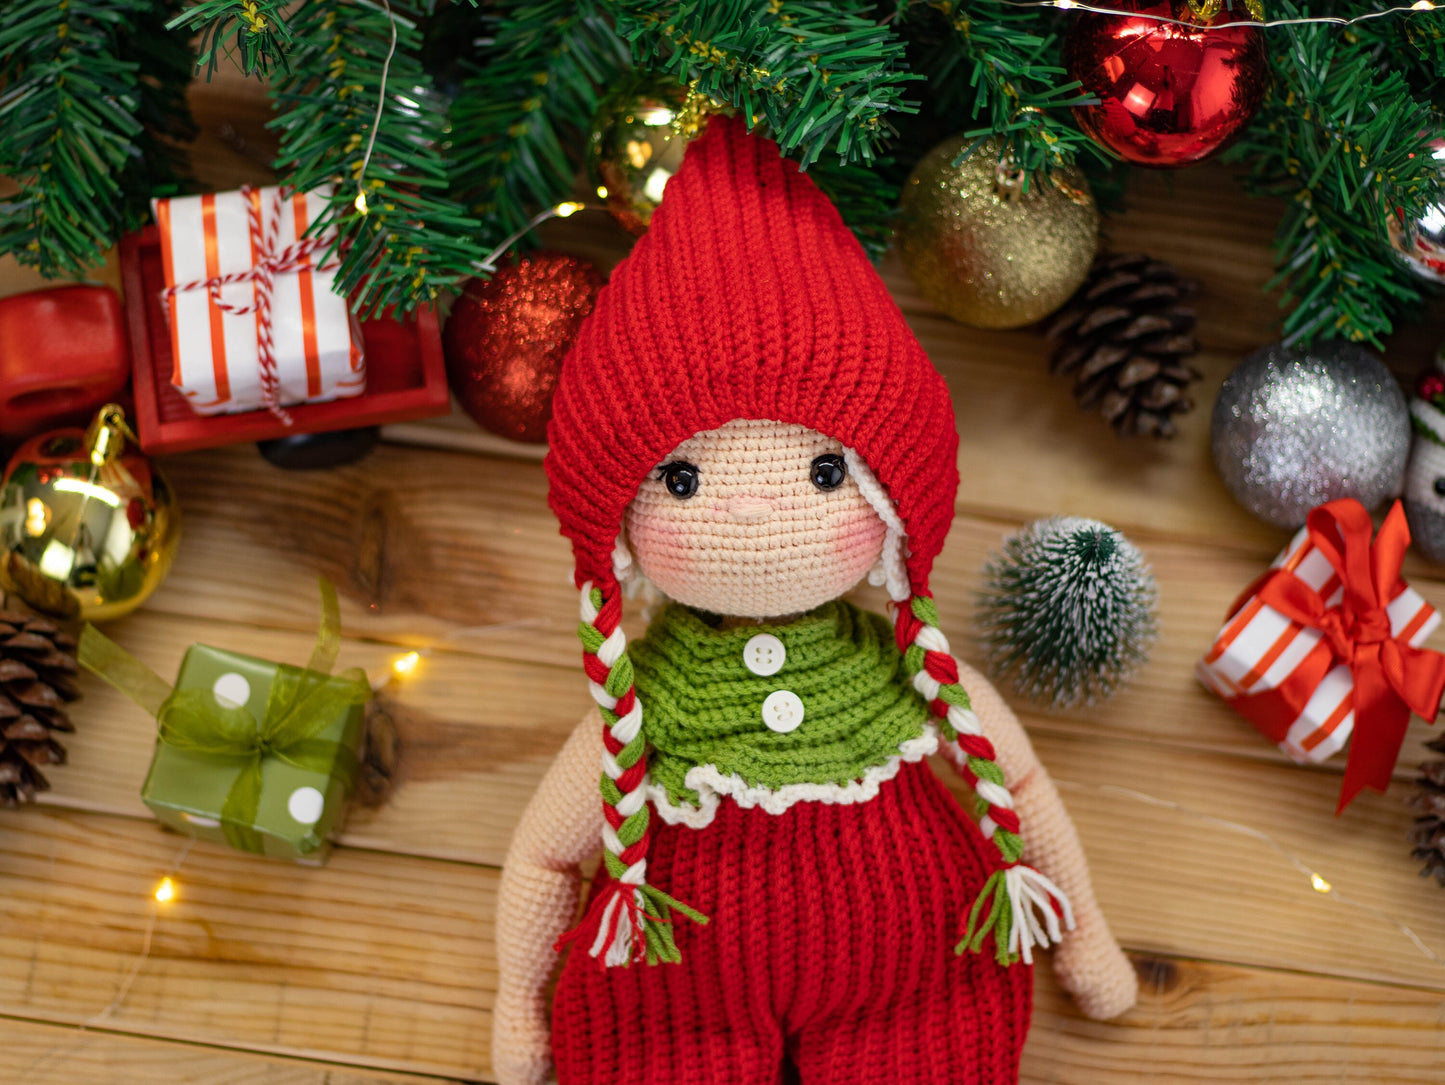 Crochet Doll Chubby Girl, Amigurumi Doll with Short Hair, For Sale, Handmade Doll for Girls